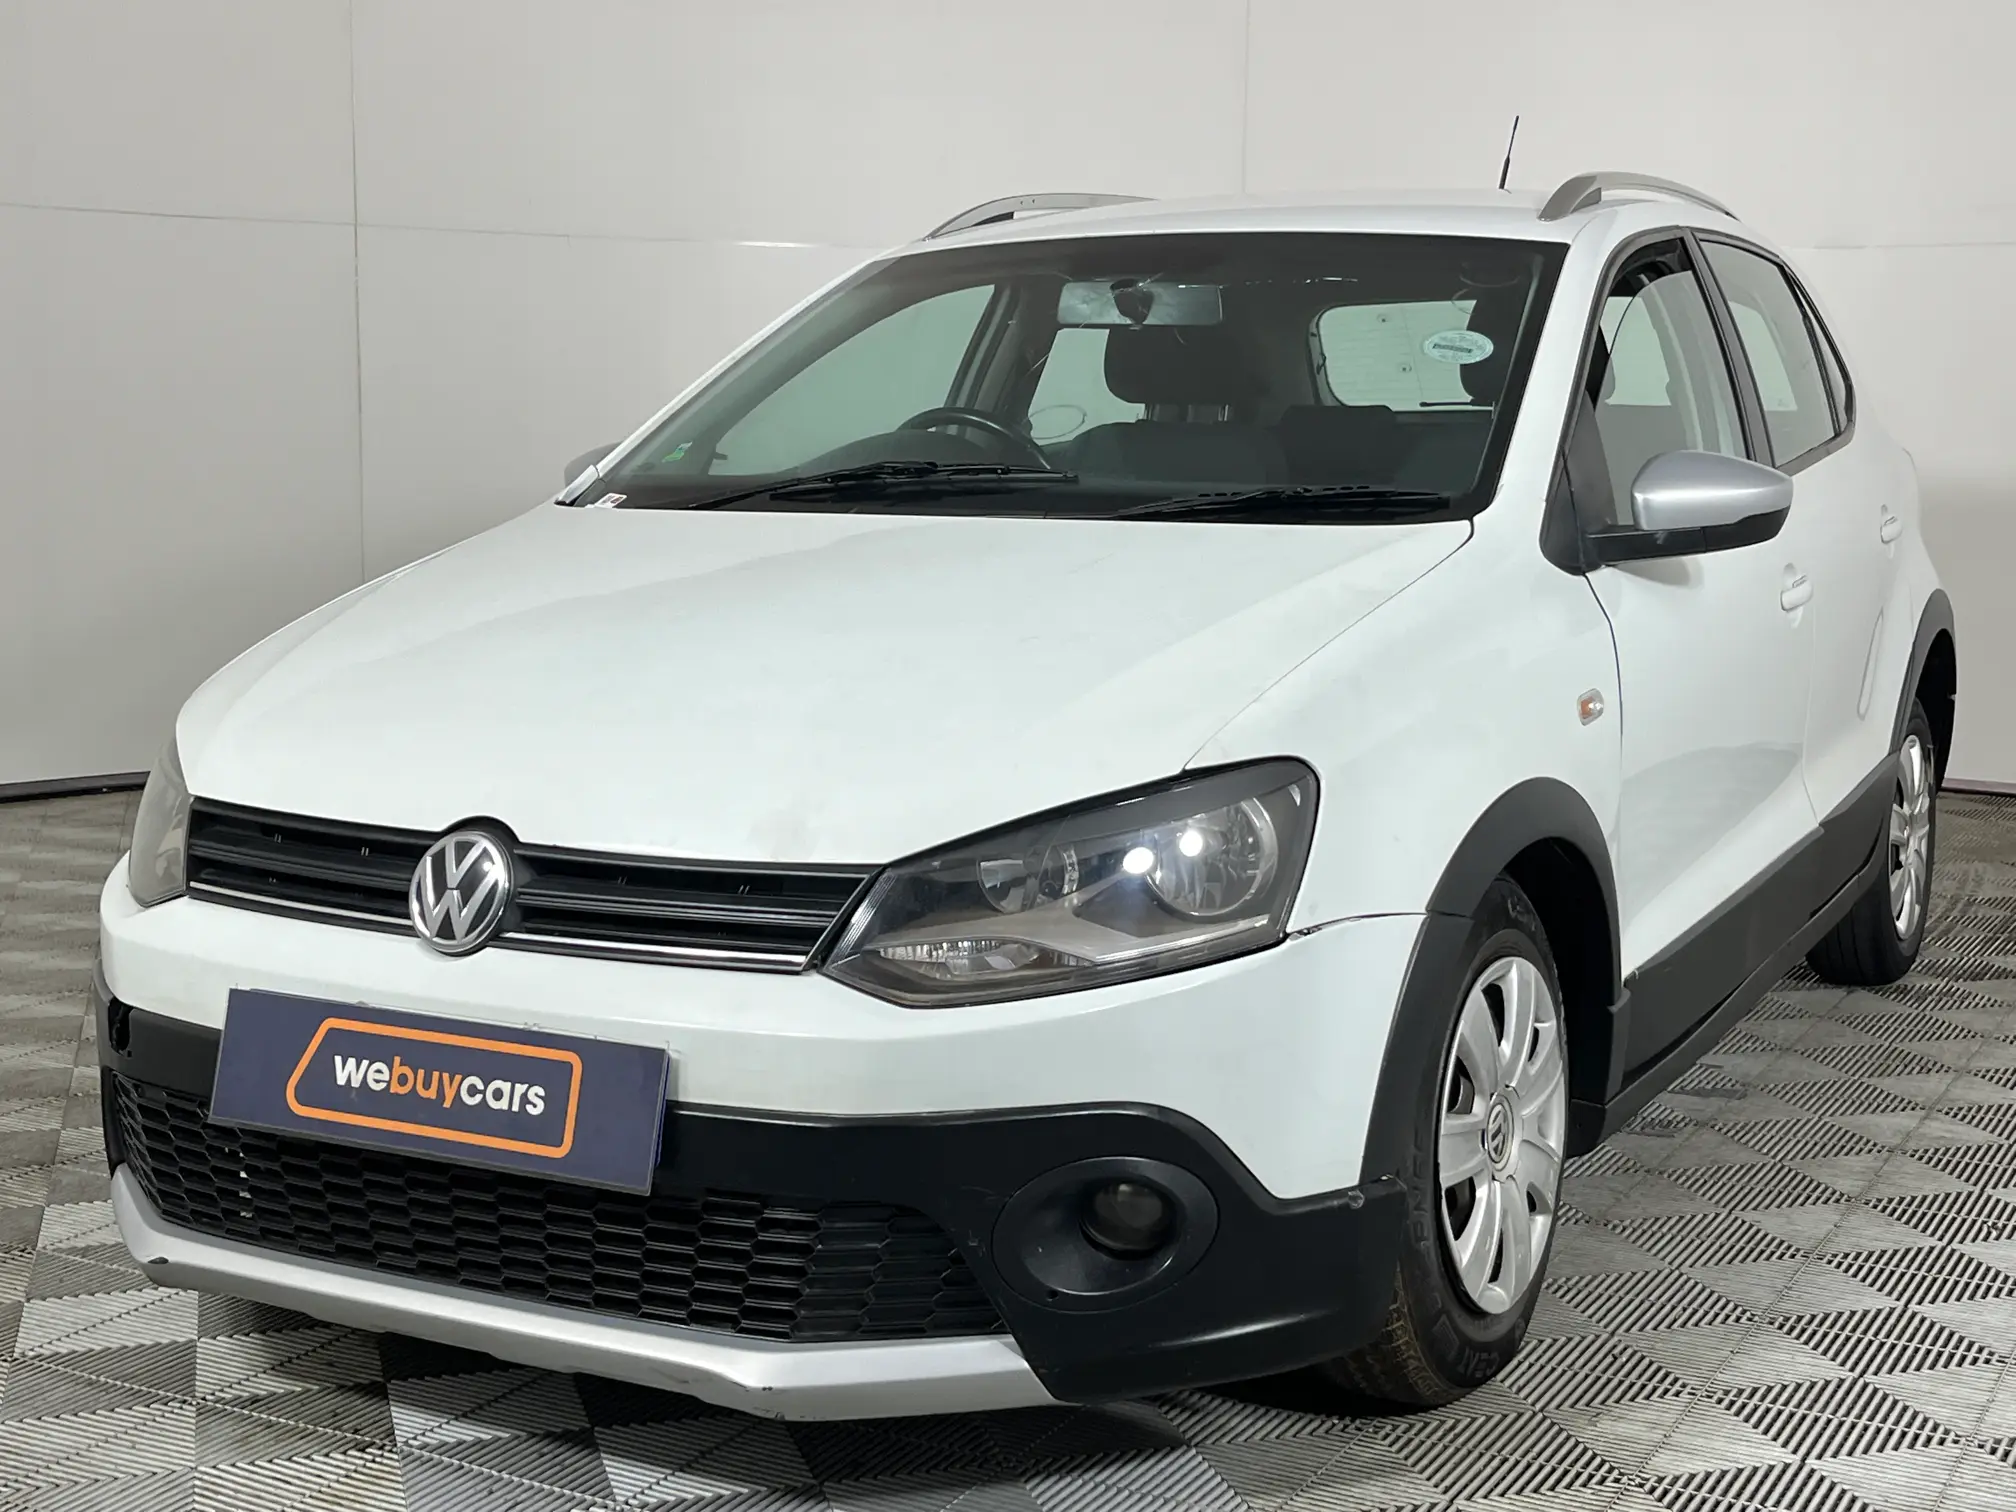 2020 Volkswagen Polo Vivo 1.6 Maxx (5dr)